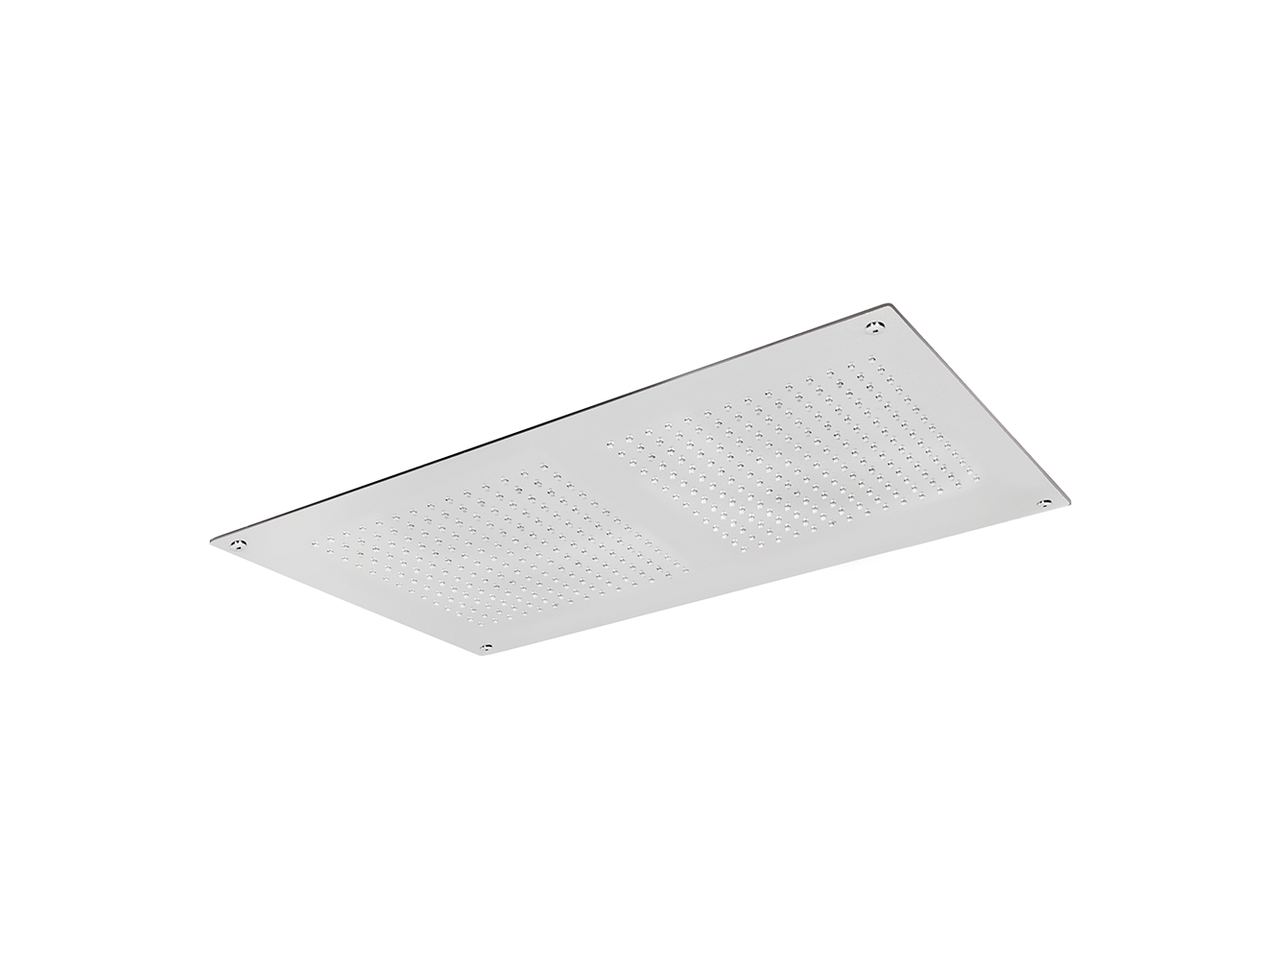 700x400mm stainless steel false ceiling showerhead ZEN - v1